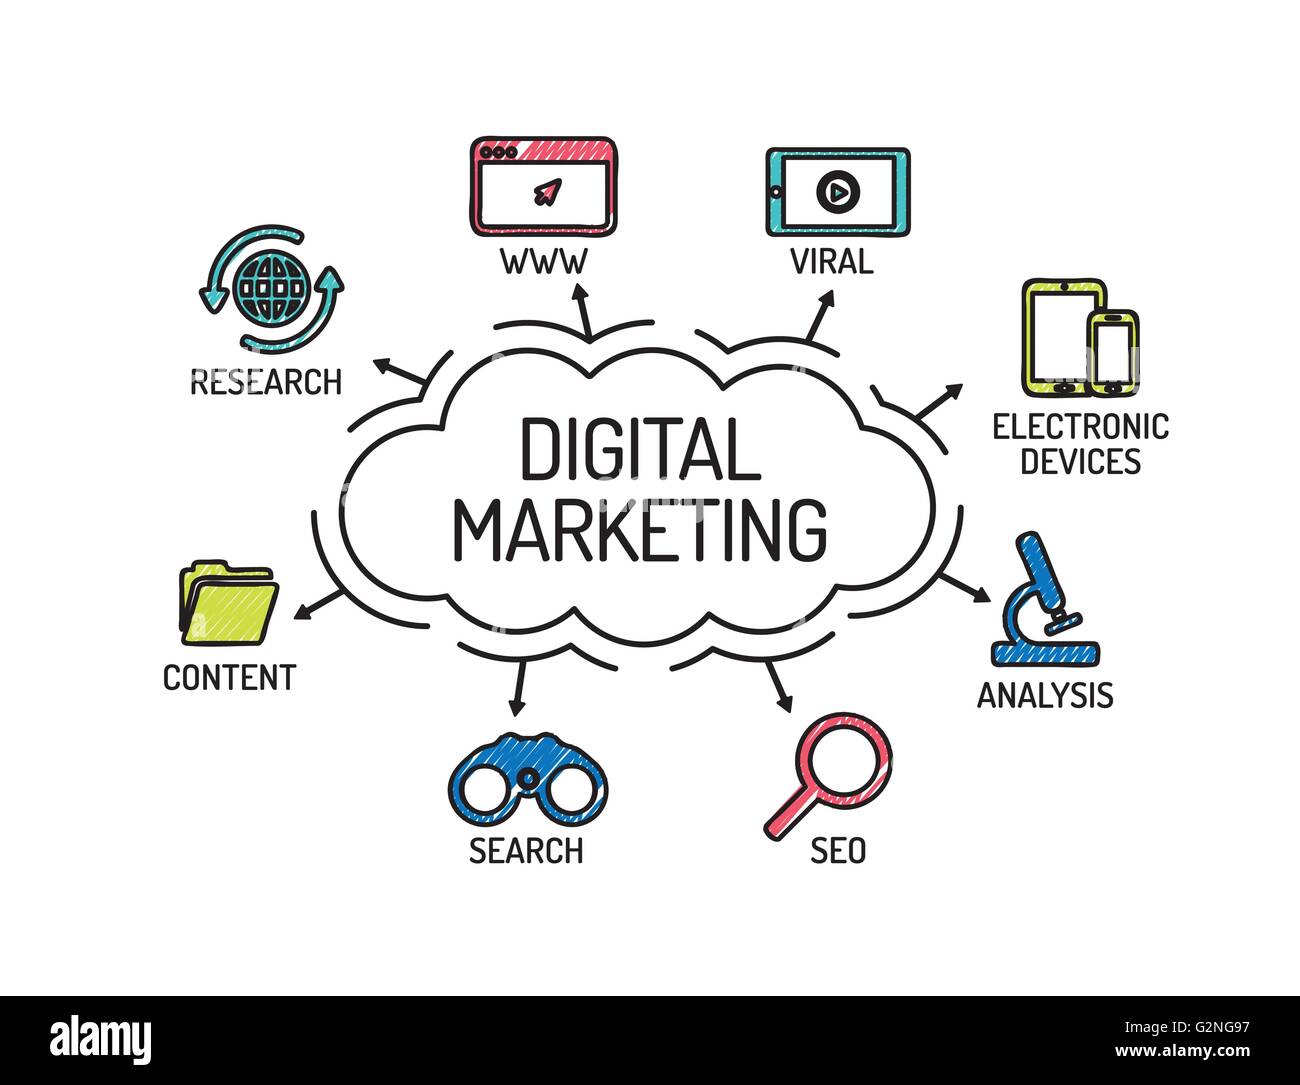 digital-marketing-chart-with-keywords-and-icons-sketch-G2NG97.jpg